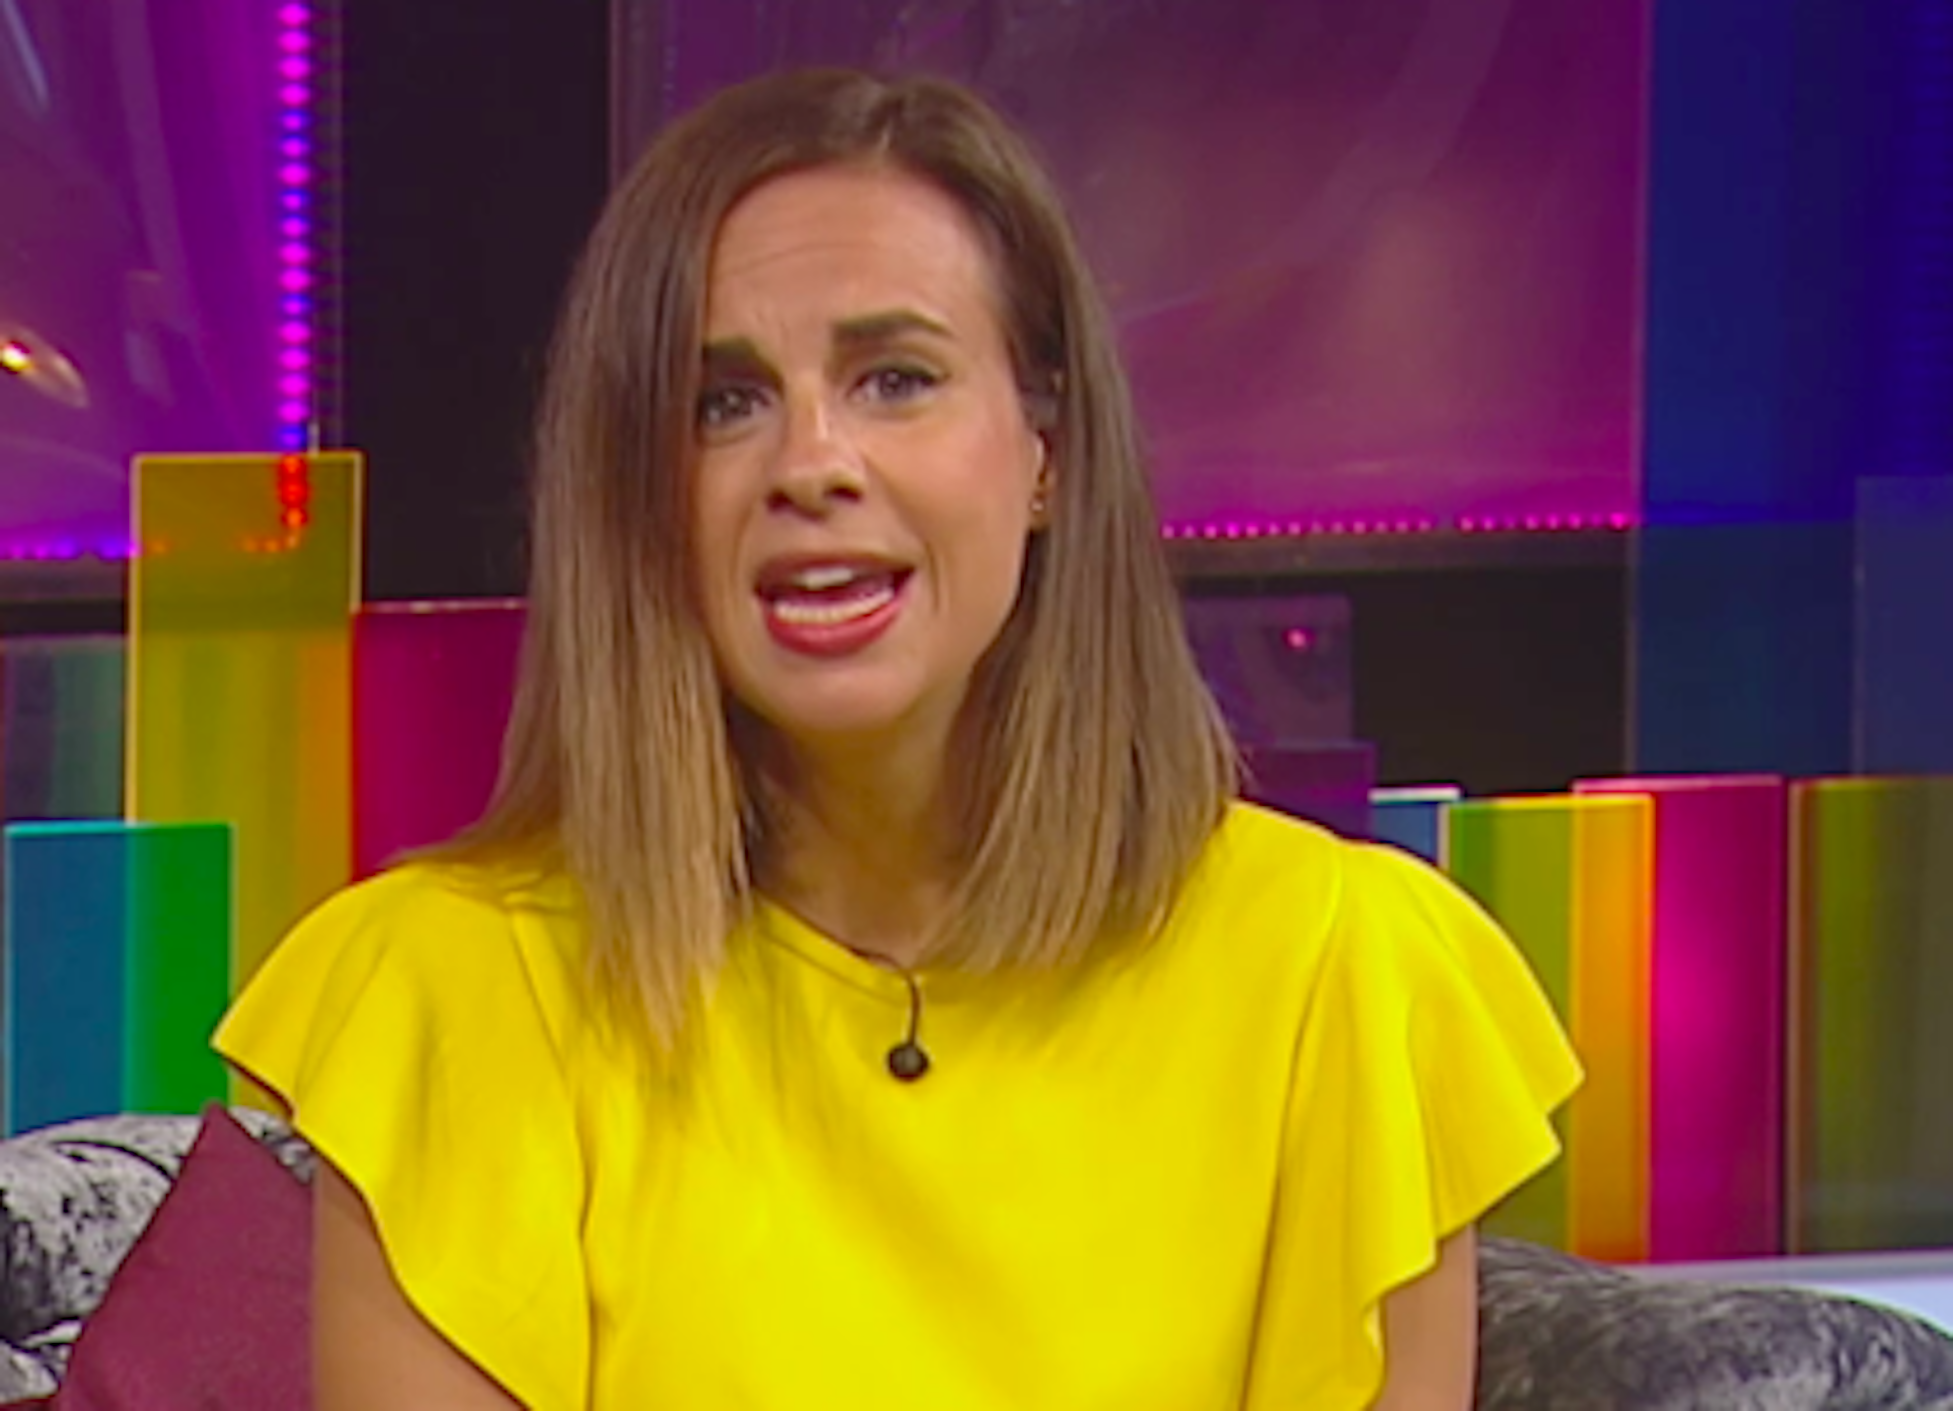 Laia Ferrer, TV3, rotunda parlant del que no tolera: "No estic boja"